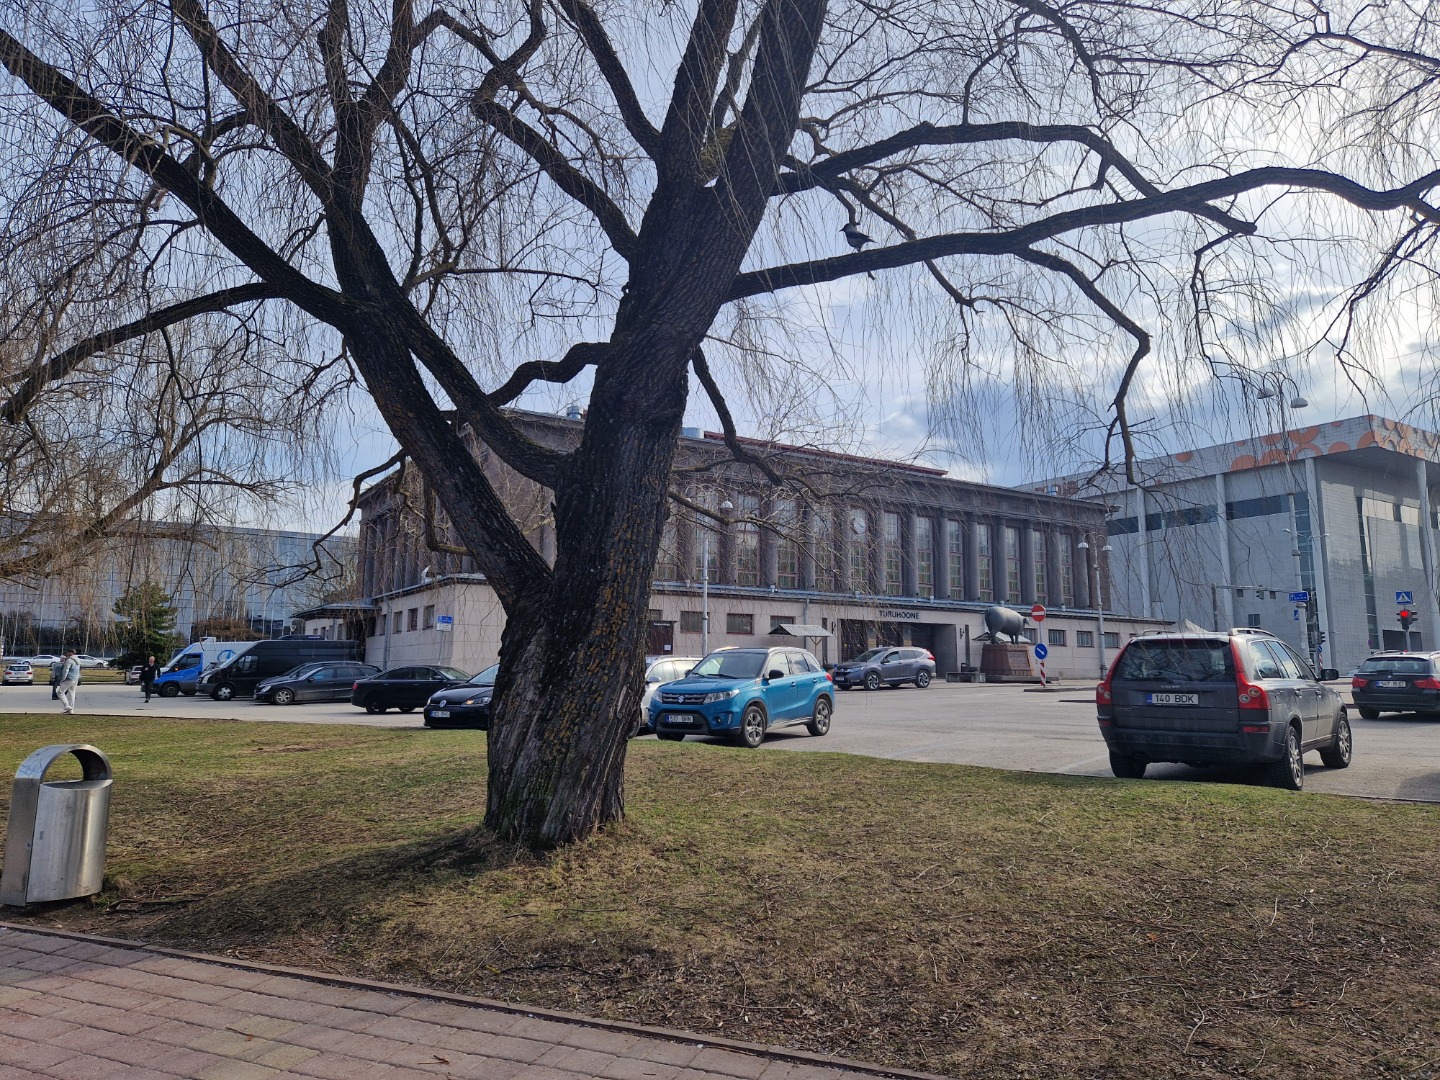 Tartu Market Building rephoto